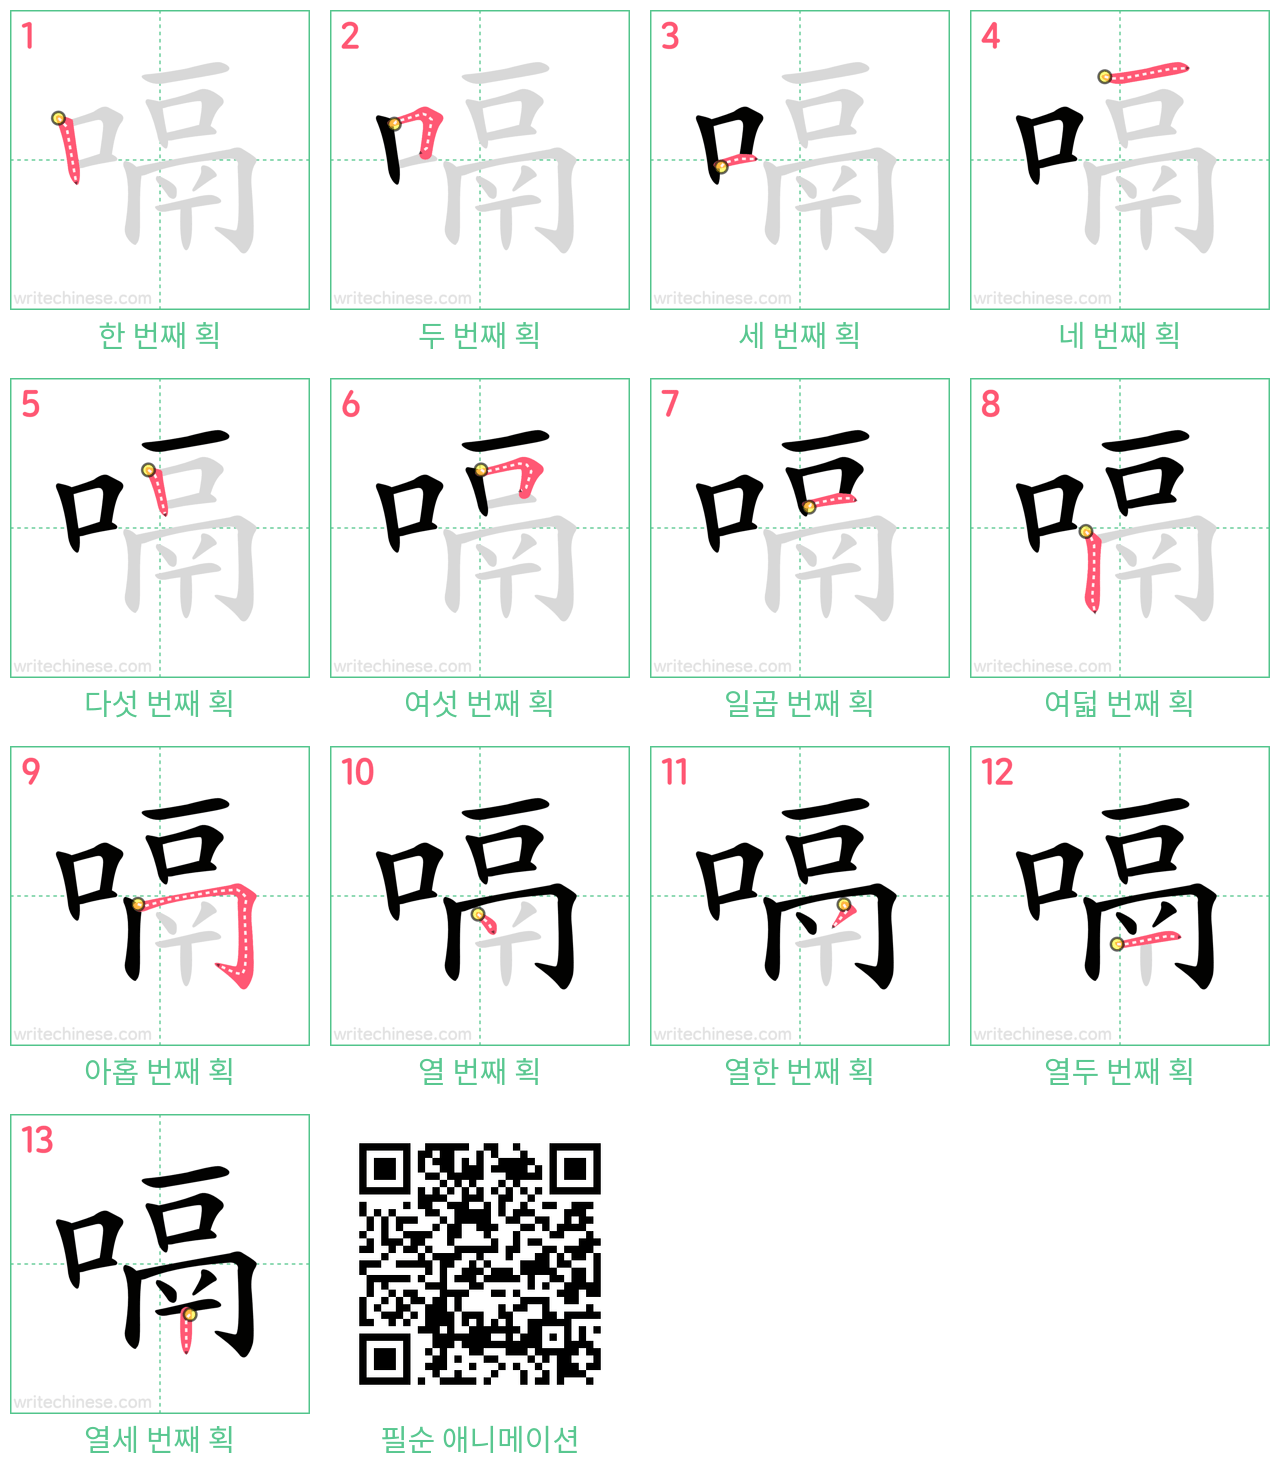 嗝 step-by-step stroke order diagrams